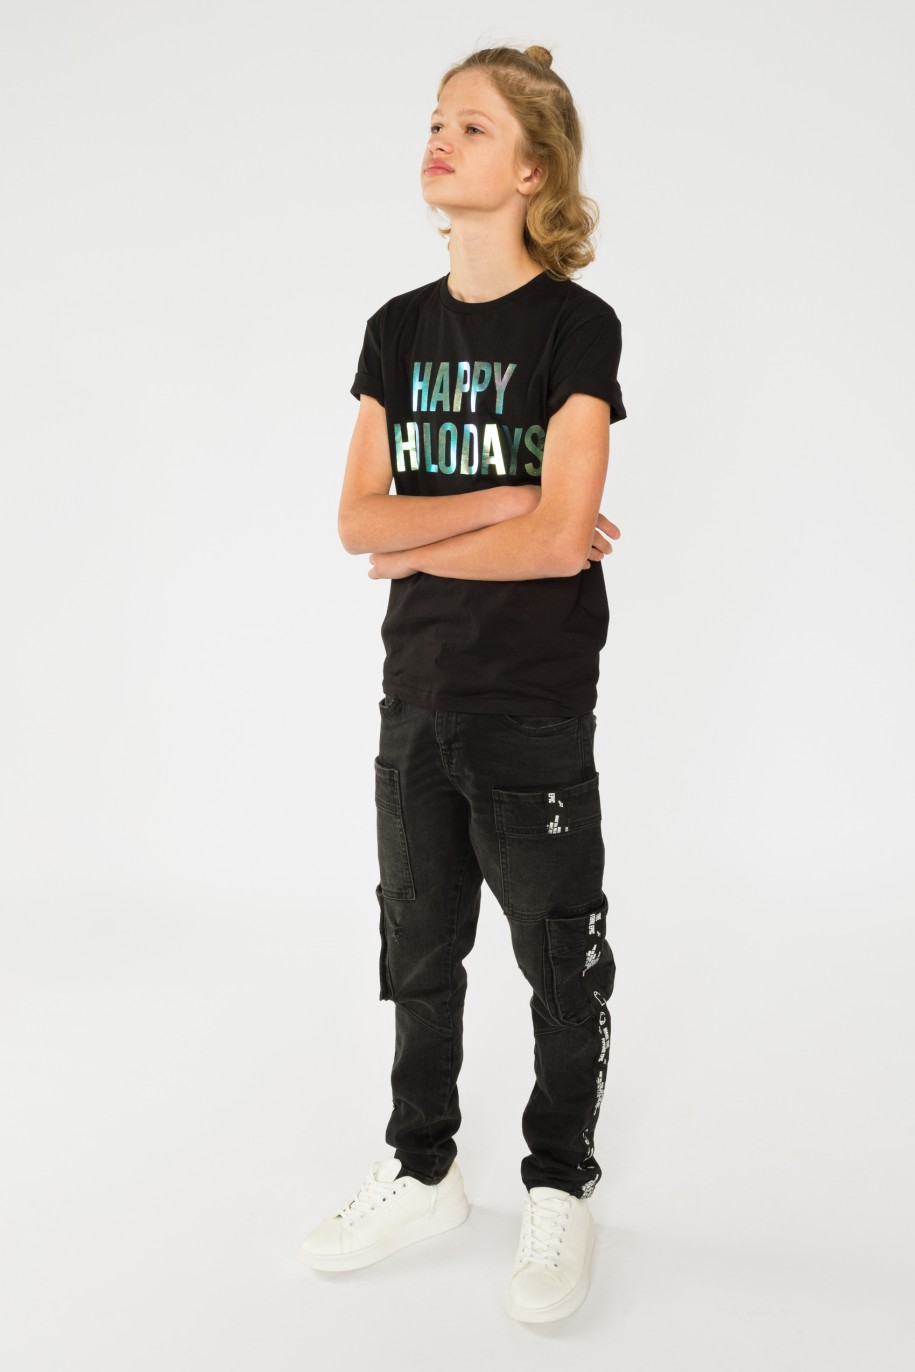 Czarny t-shirt dla chłopaka HAPPY HOLODAYS - 31177